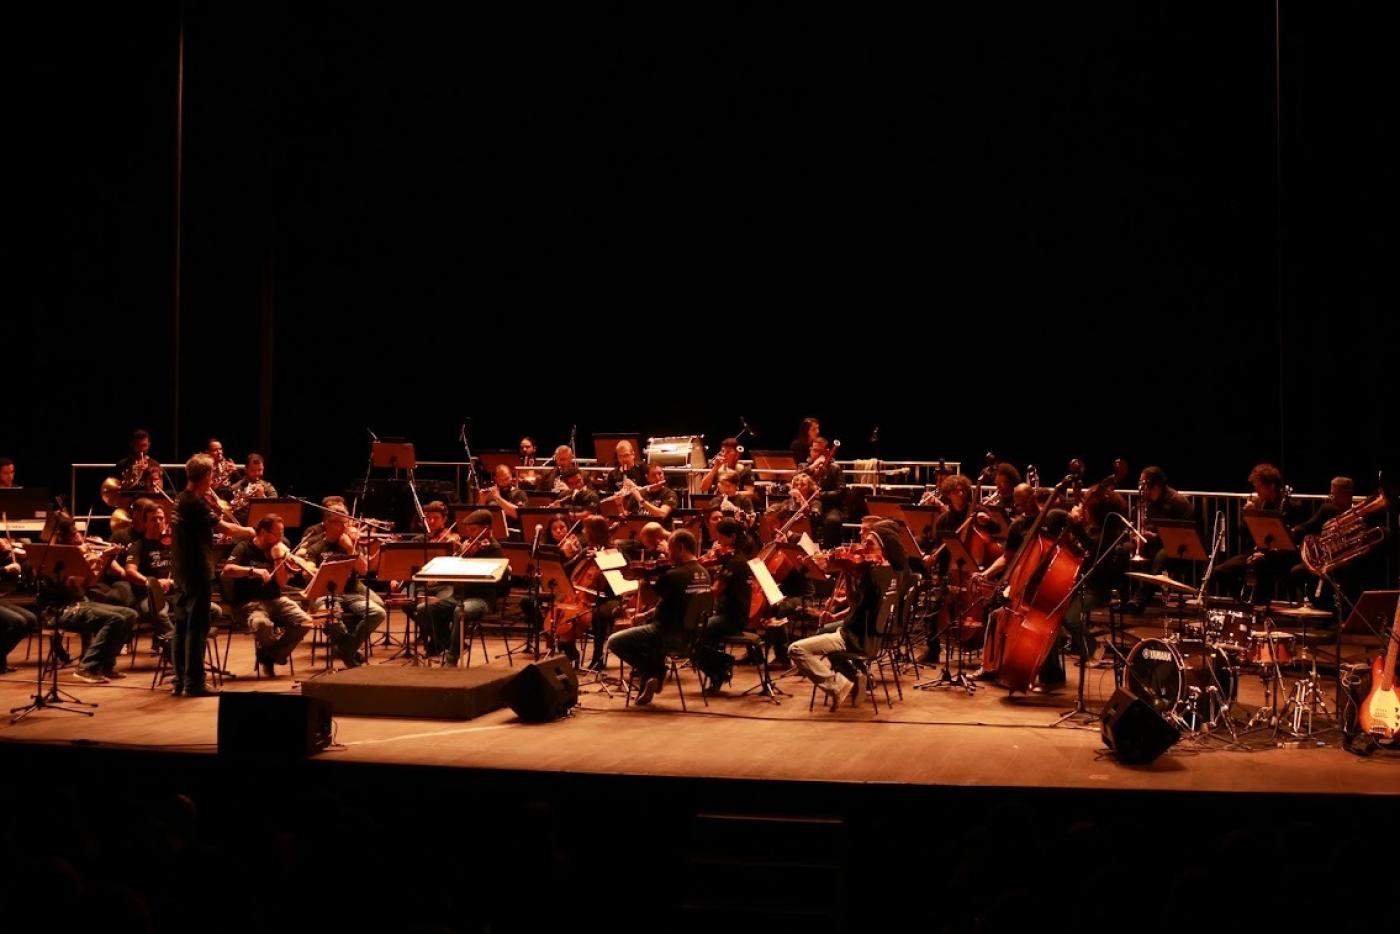 orquestra se apresentando no palco #paratodosverem